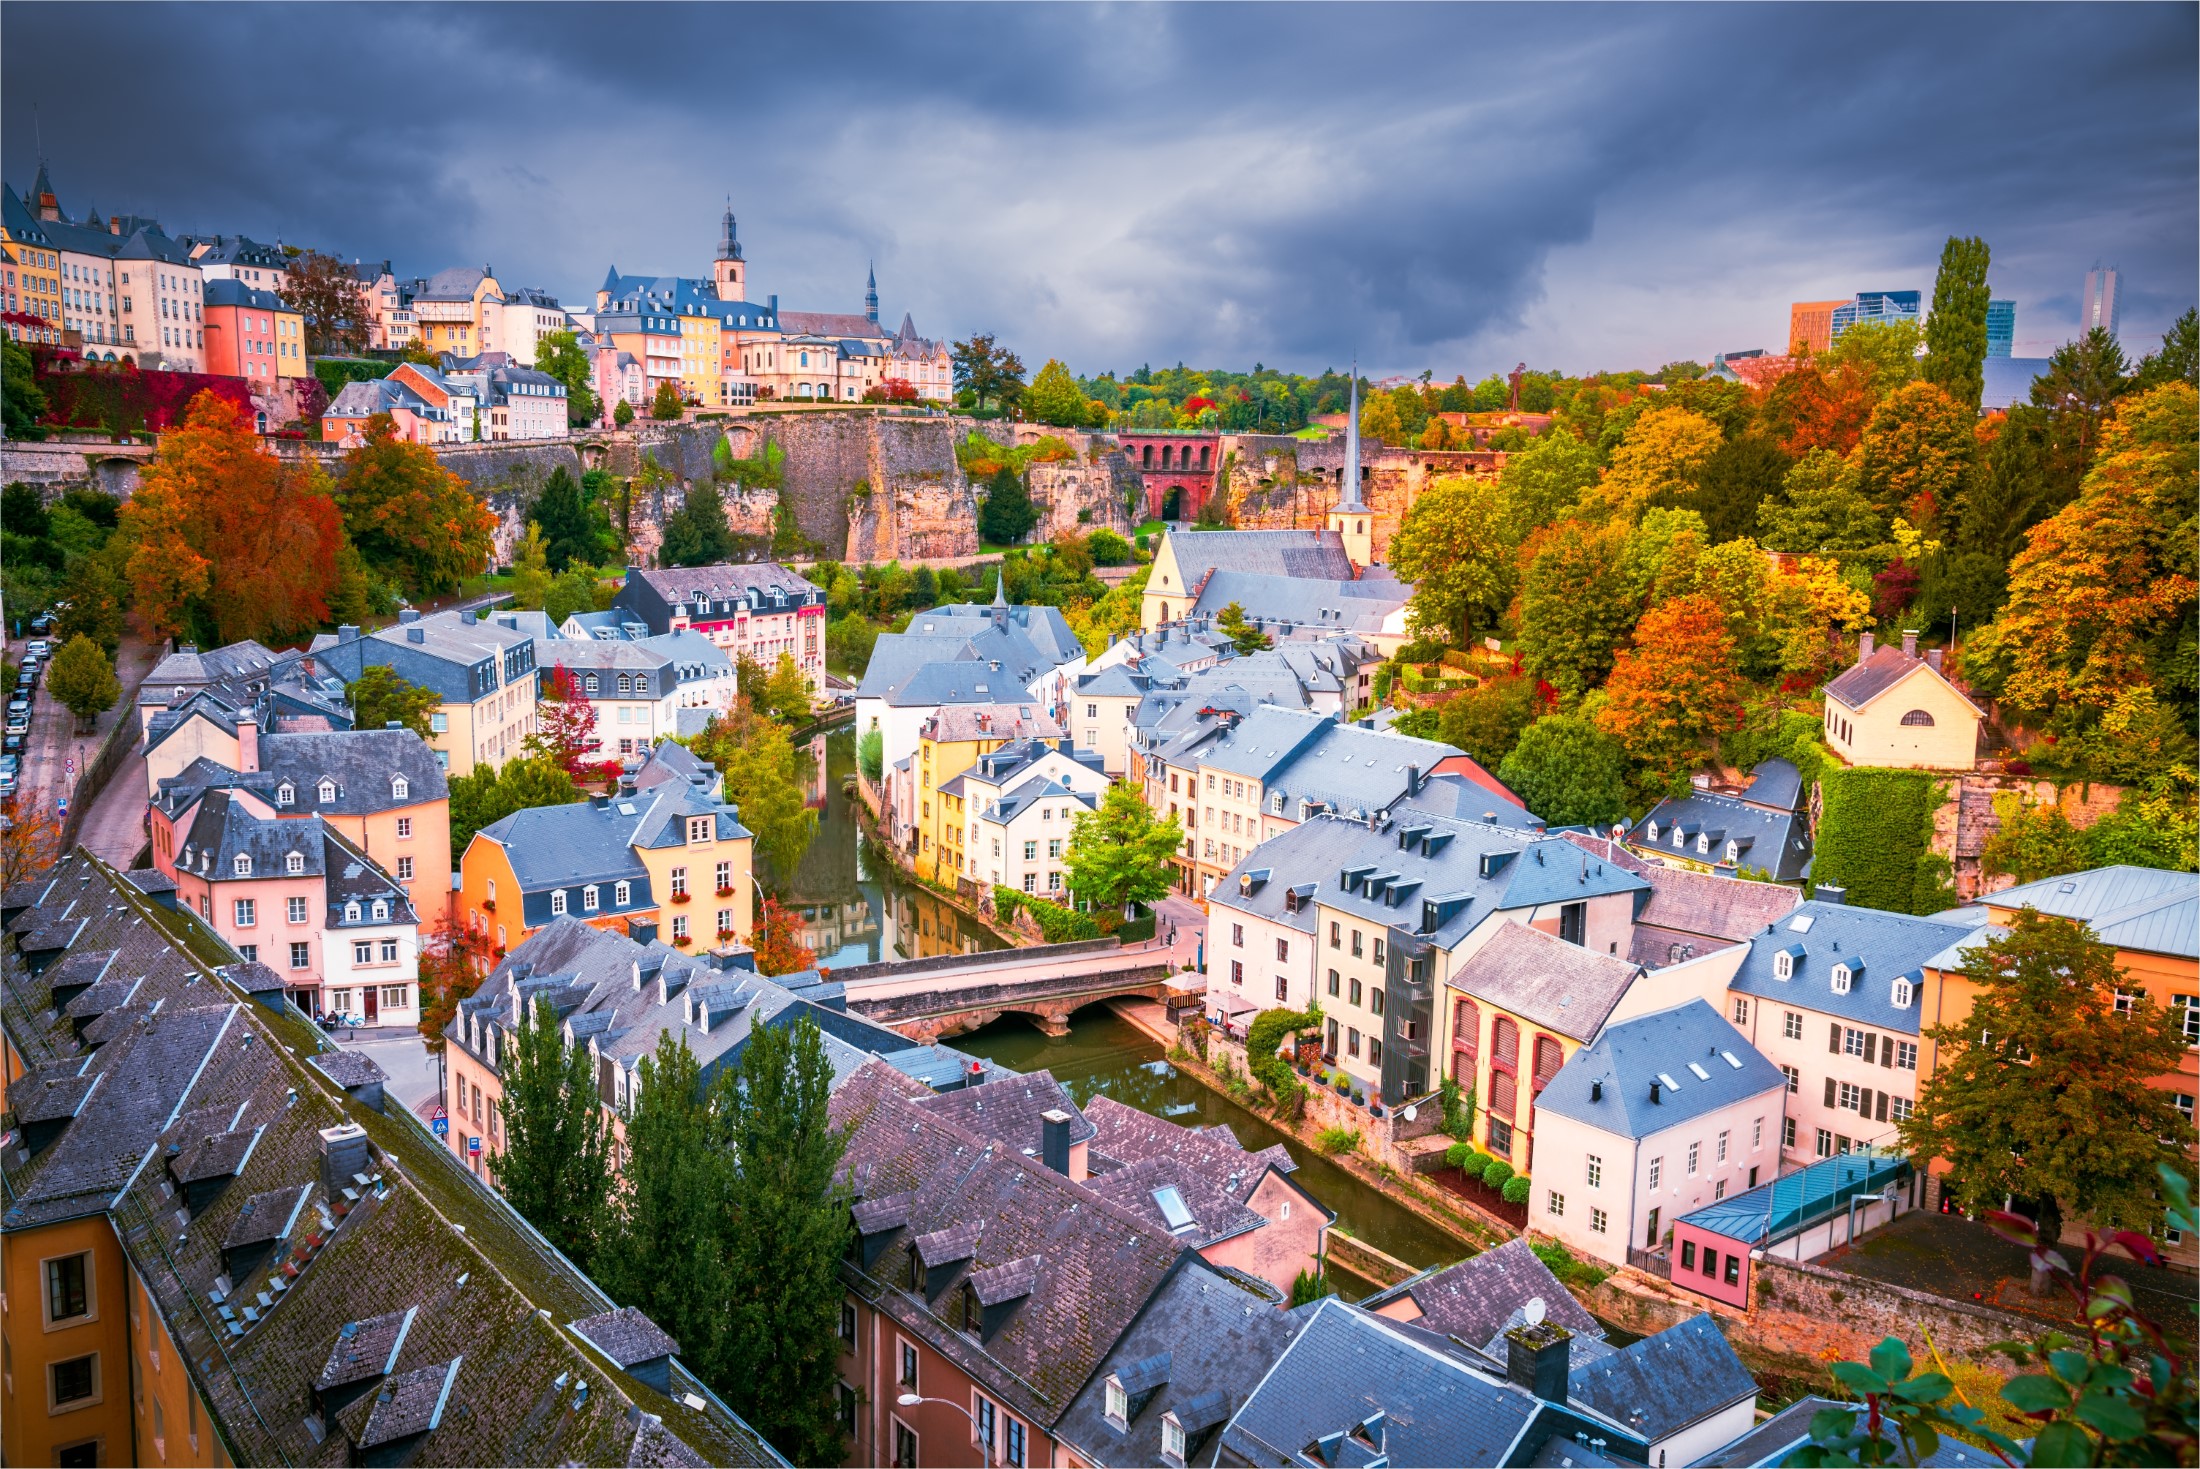 Luksemburg, pochmurny dzień antenowy pejzaż miejski, rzeka Alzette i dzielnica Grund